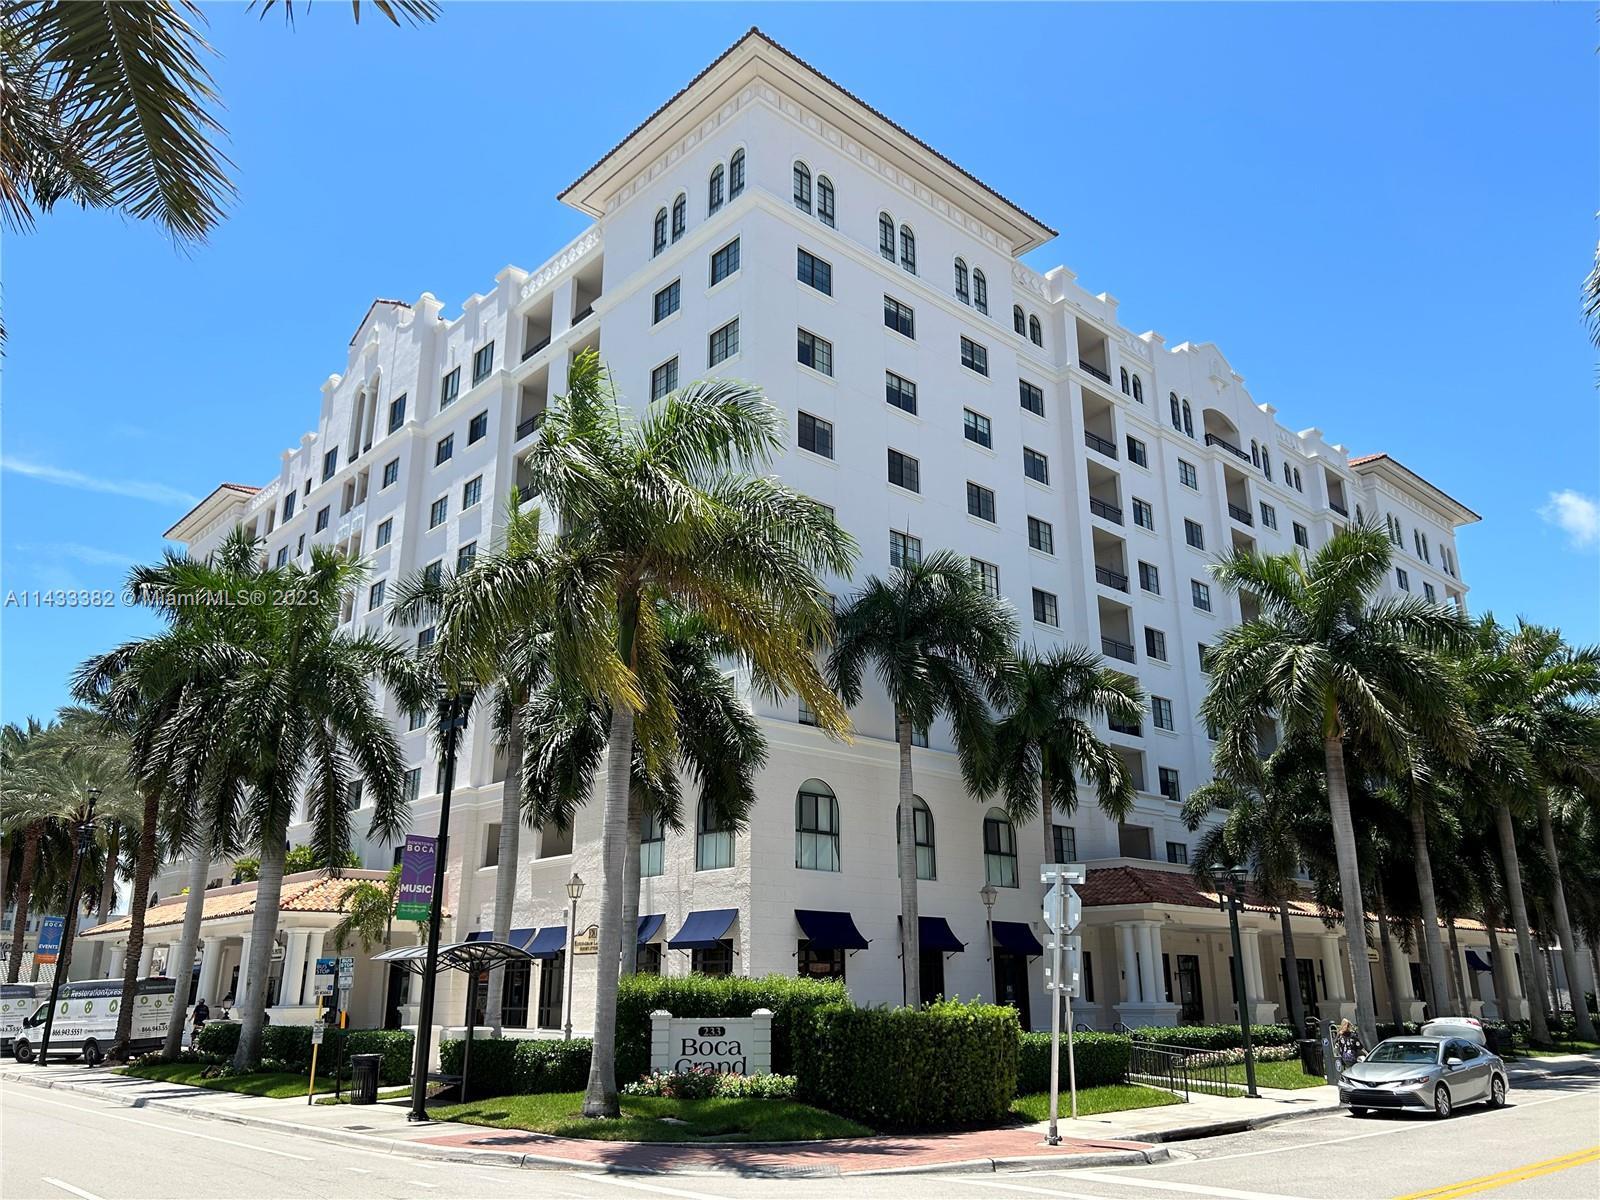 Great 3 Bedroom unit. Boca Grand condominium is a luxury condo building located in east Boca Raton, 